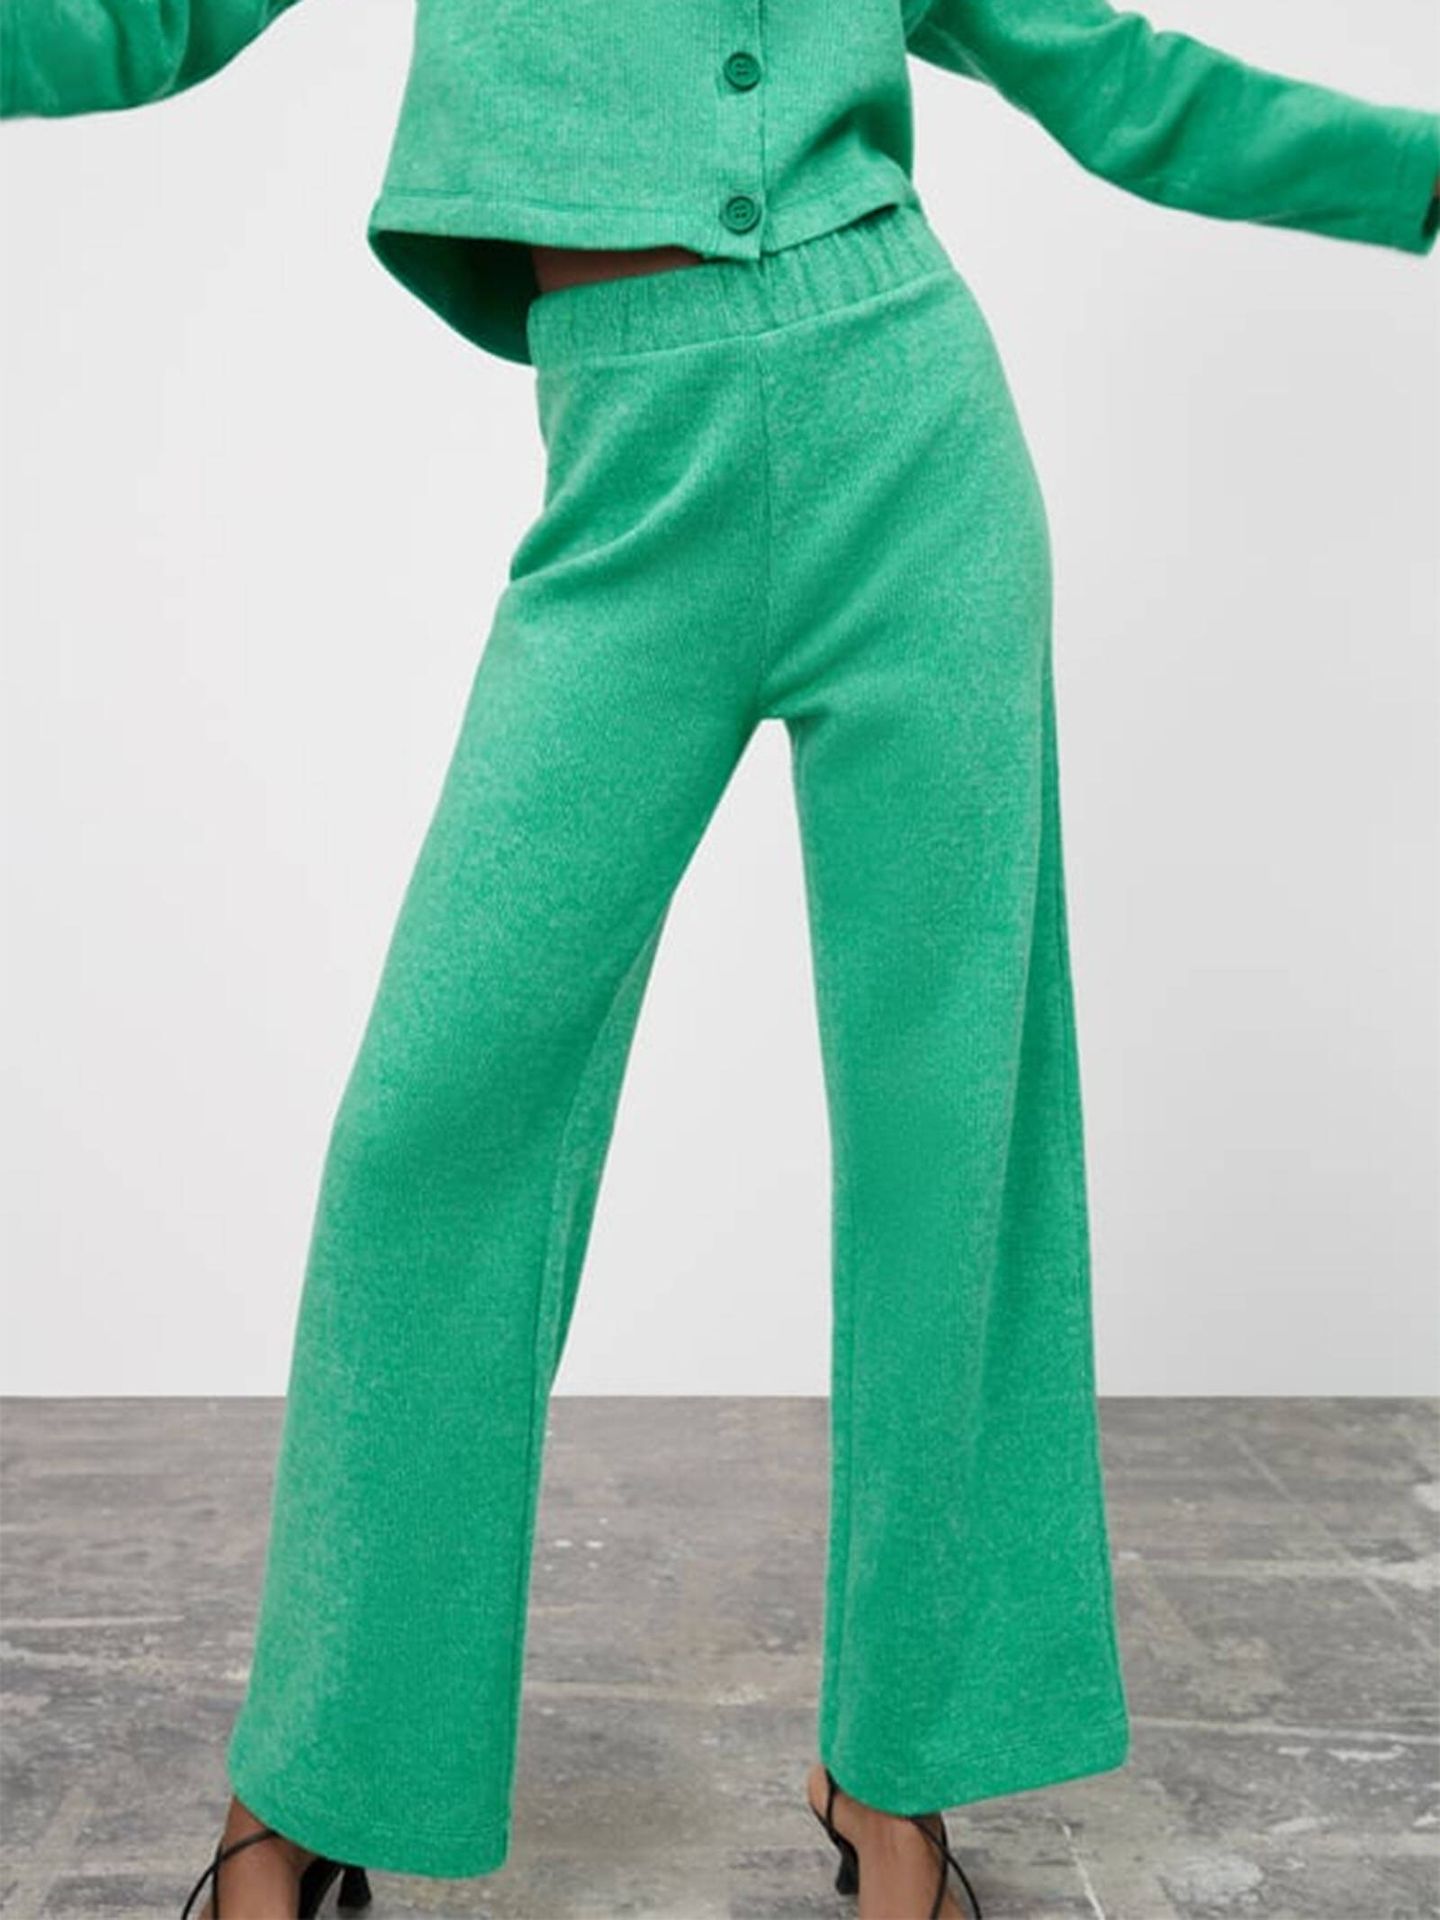 Uno de los pantalones anchos y cómodos de Zara. (Zara/Cortesía)